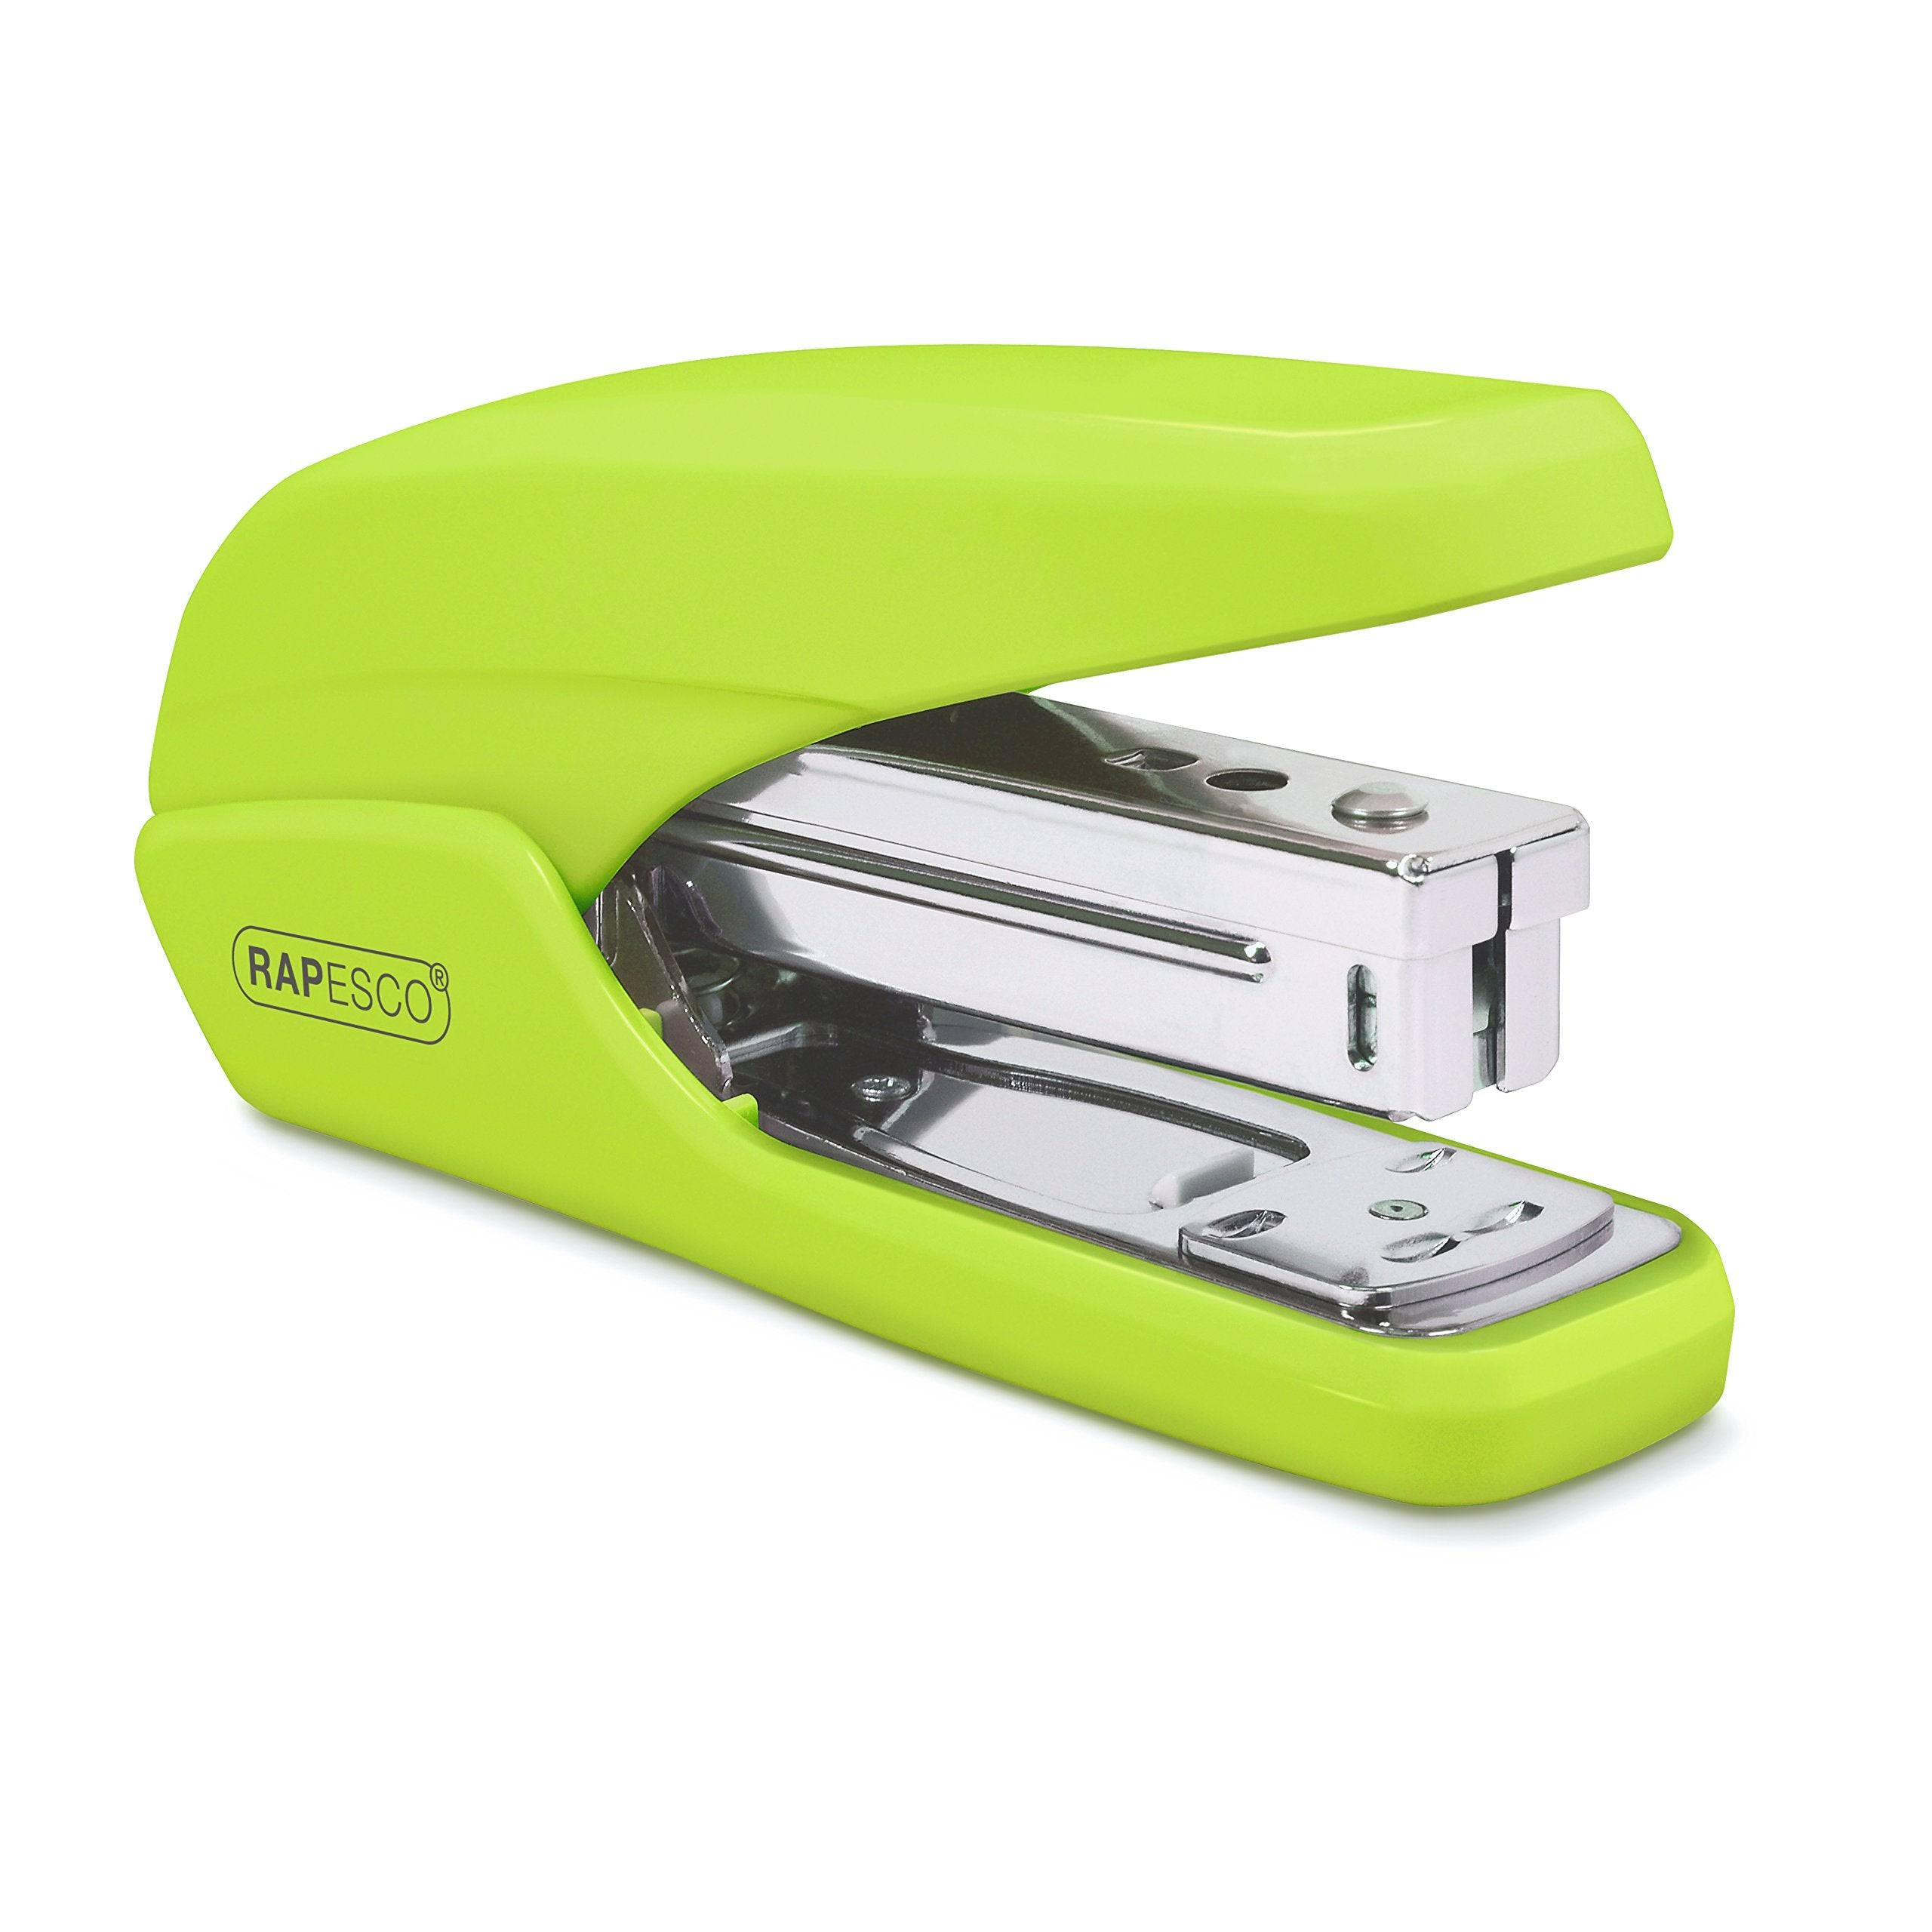 Rapesco 1395 X5-25ps Less Effort Stapler Plastic 25 Sheet Green